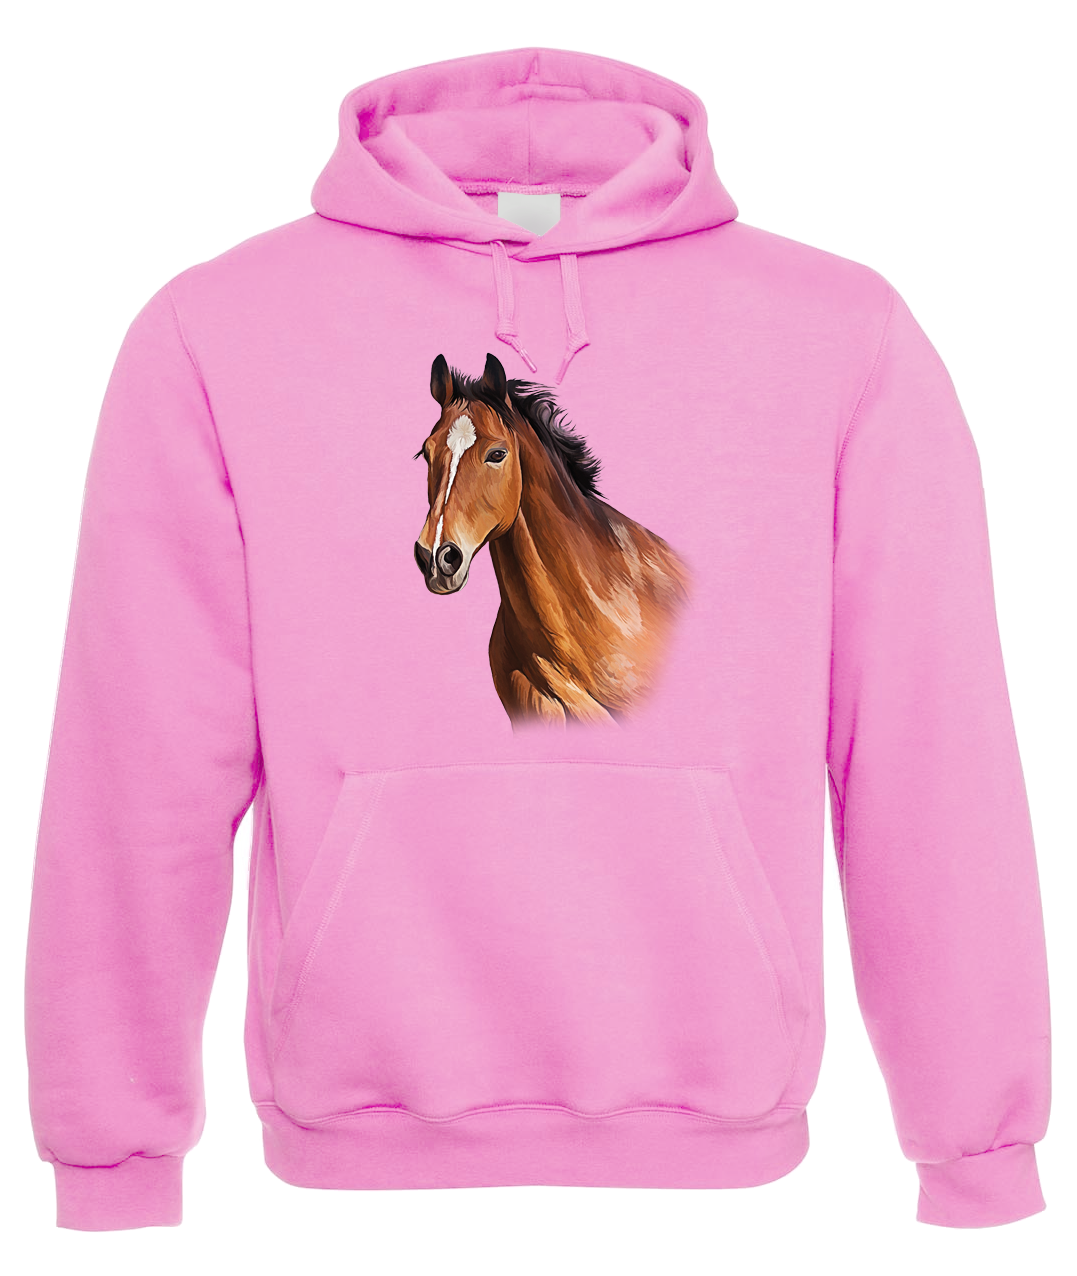 Mikina s koněm - Hnědák Velikost: S, Barva: Světle růžová